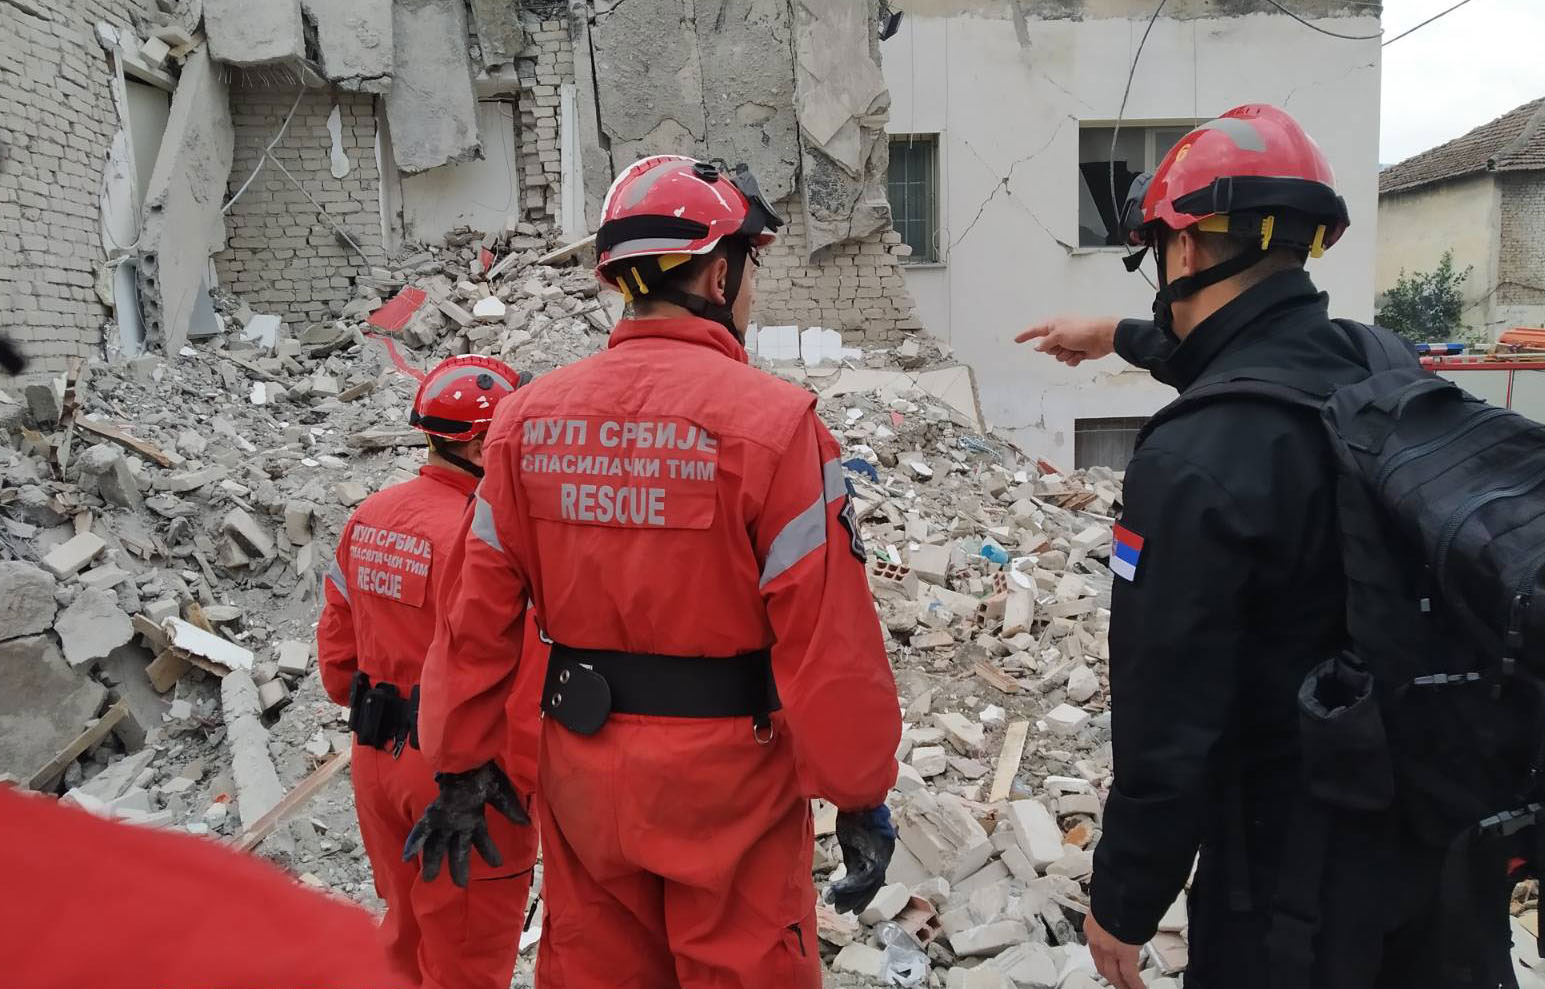 Srpski vatrogasci-spasioci angažovani na pretrazi terena i spasavanju ugroženog stanovništva u Albaniji